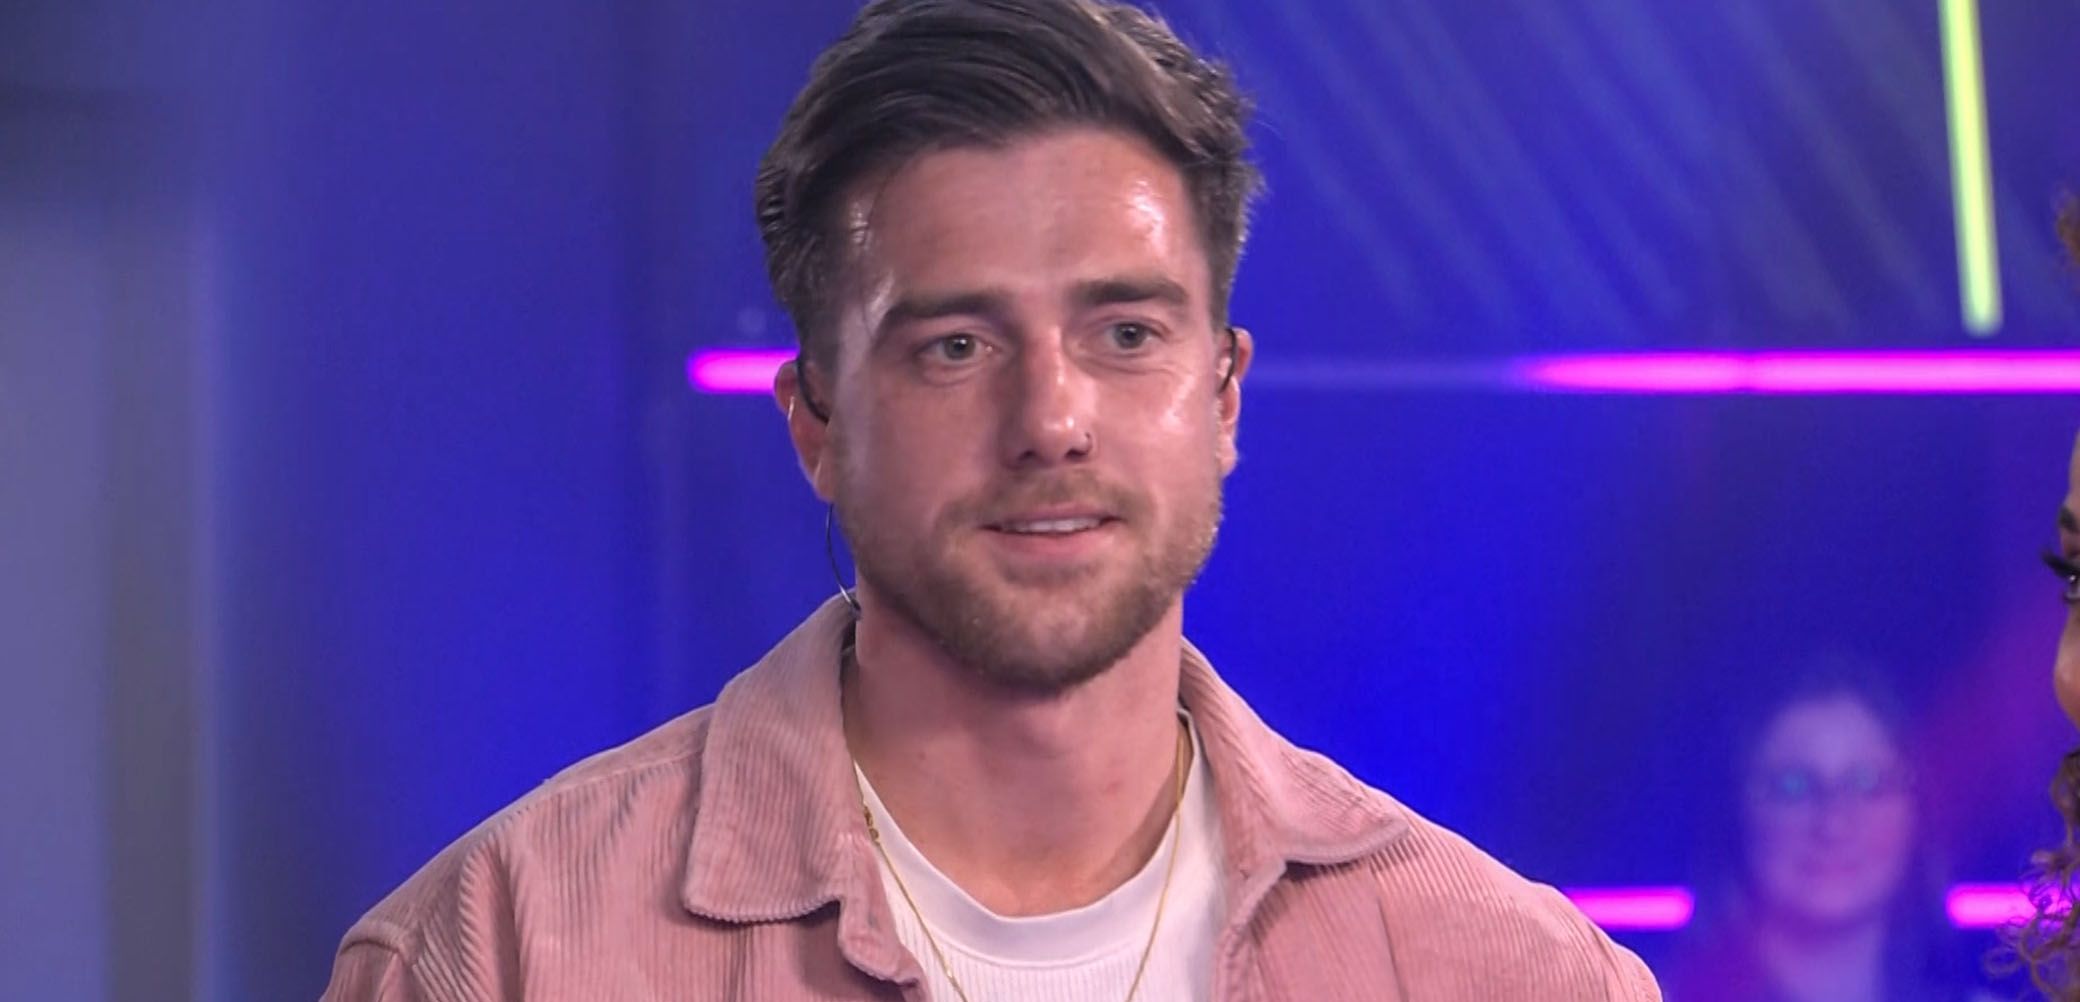 Tom verlaat Big Brother vlak voor de finaleweek: "Ik ben trots op mezelf"